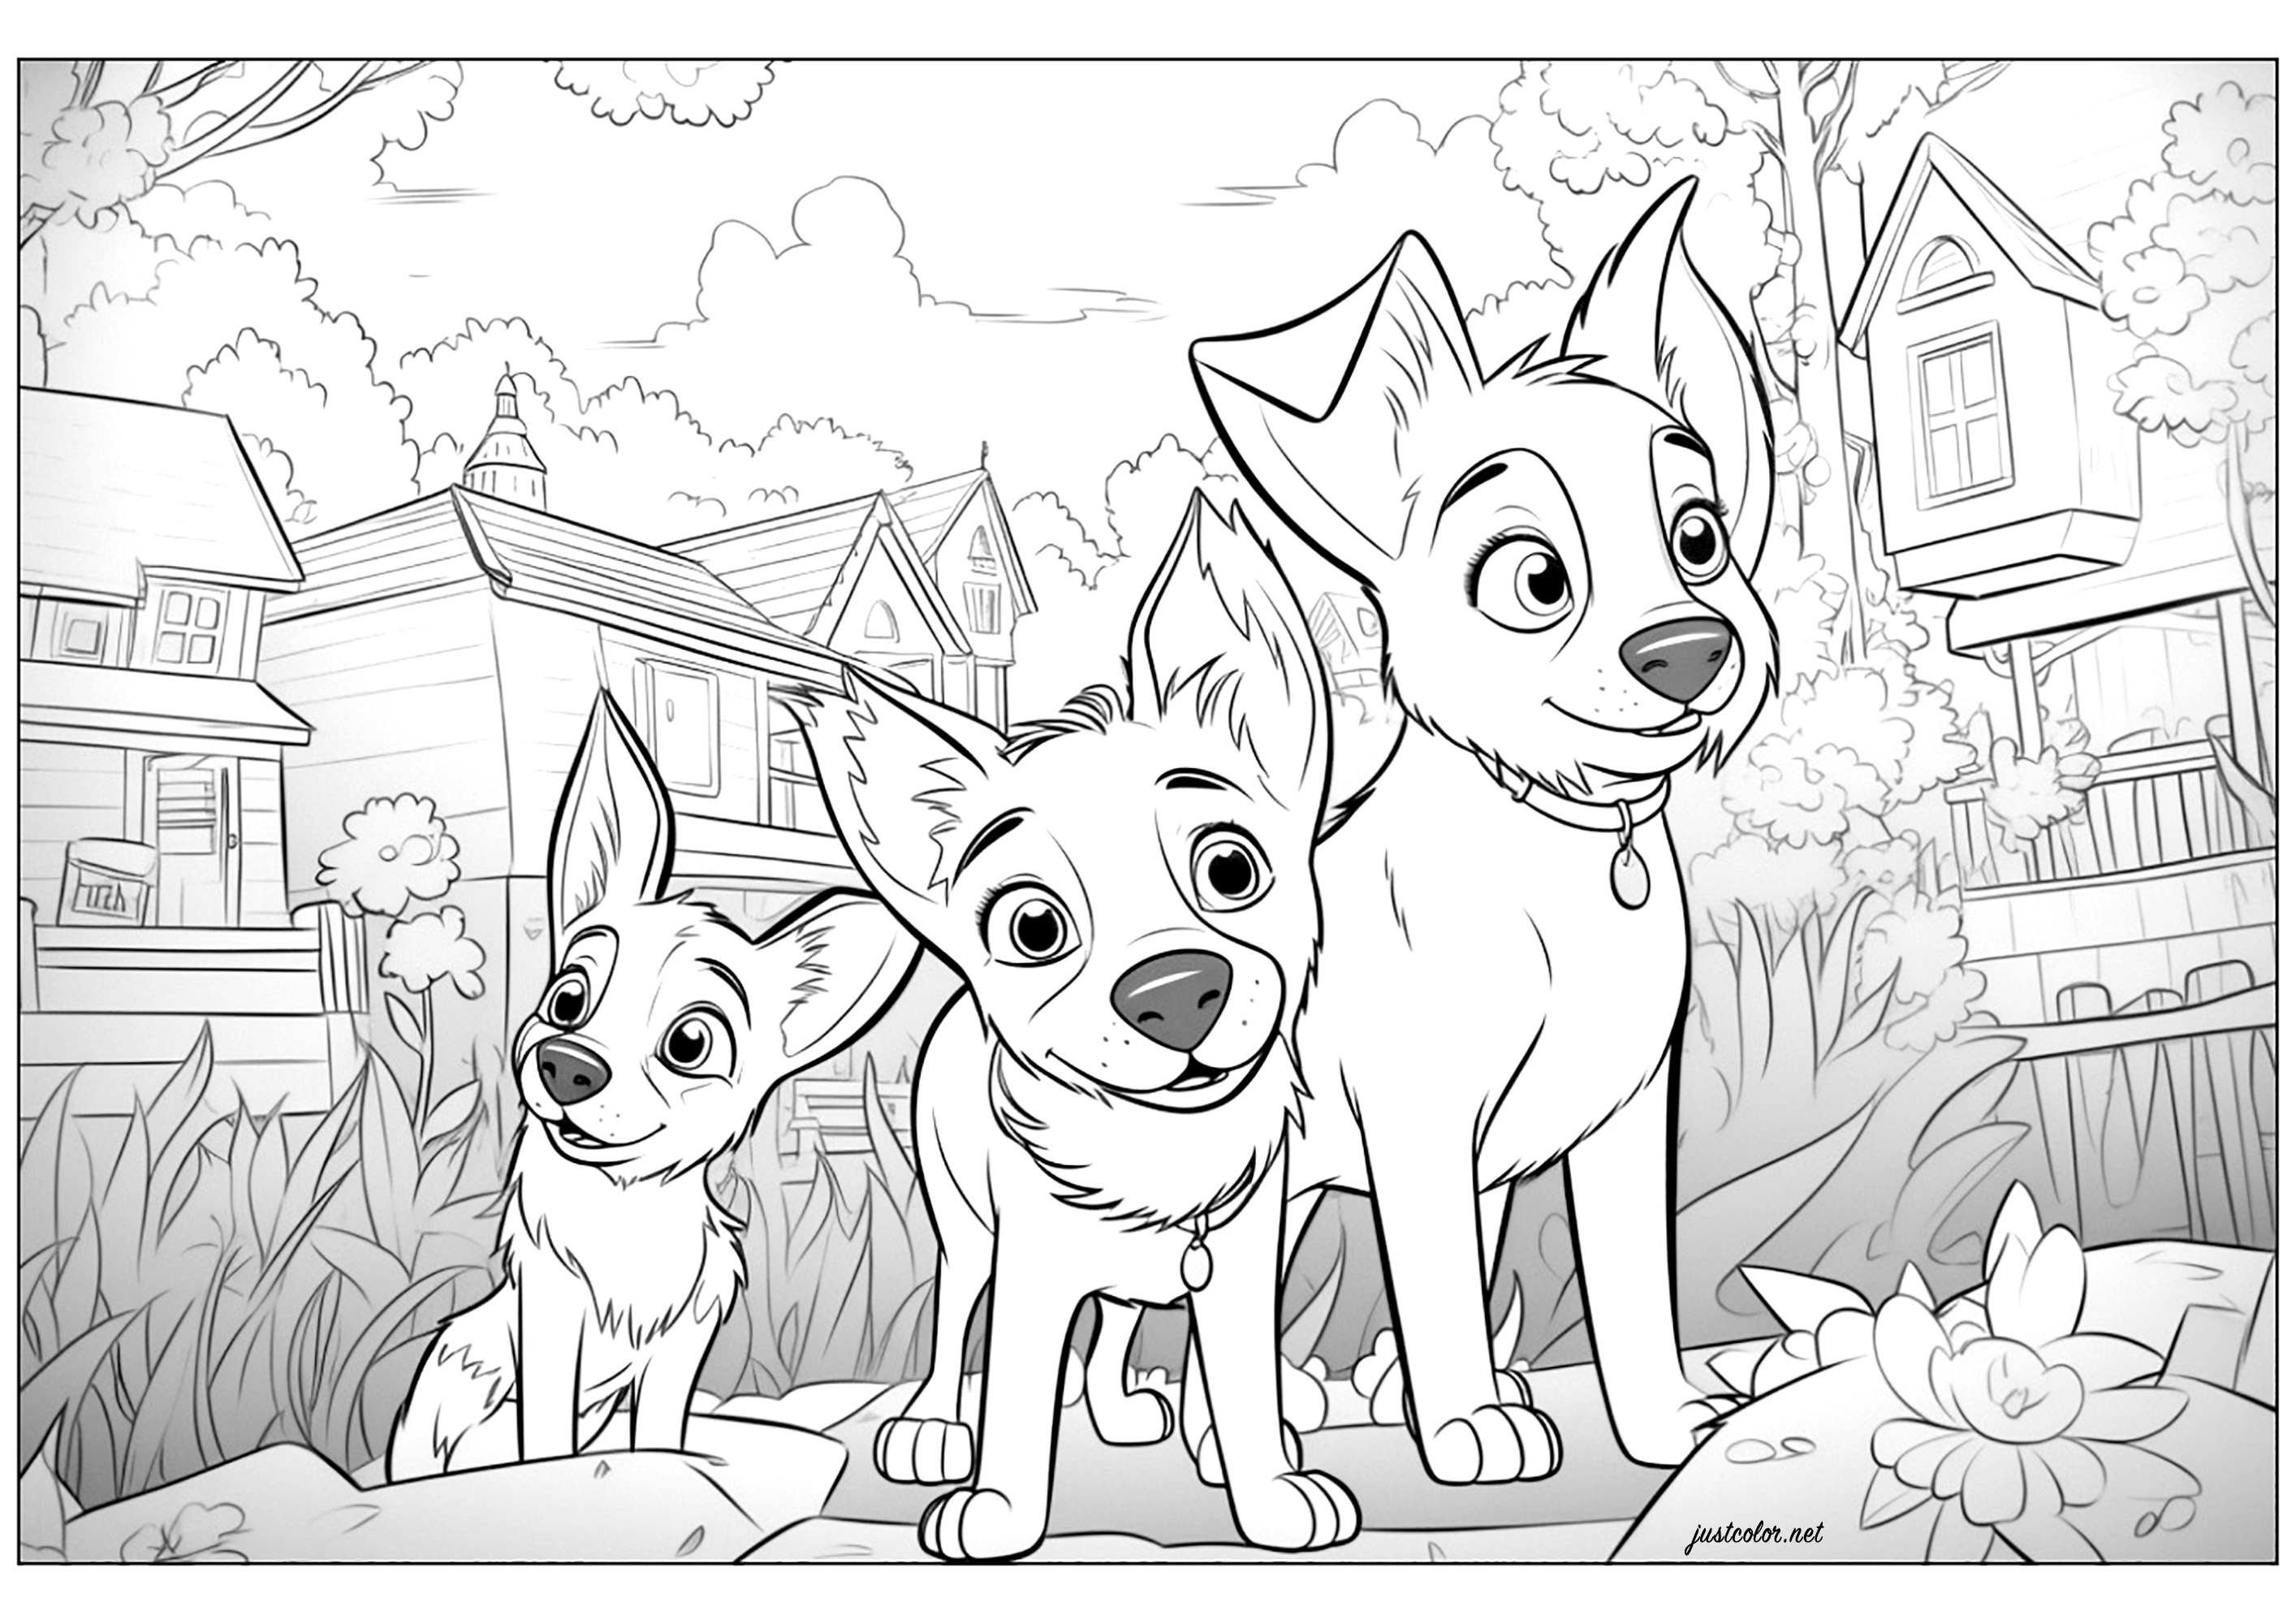 Tre cani disegnati in stile Disney - Pixar. Colorate anche tutte le case sullo sfondo di questa illustrazione originale.